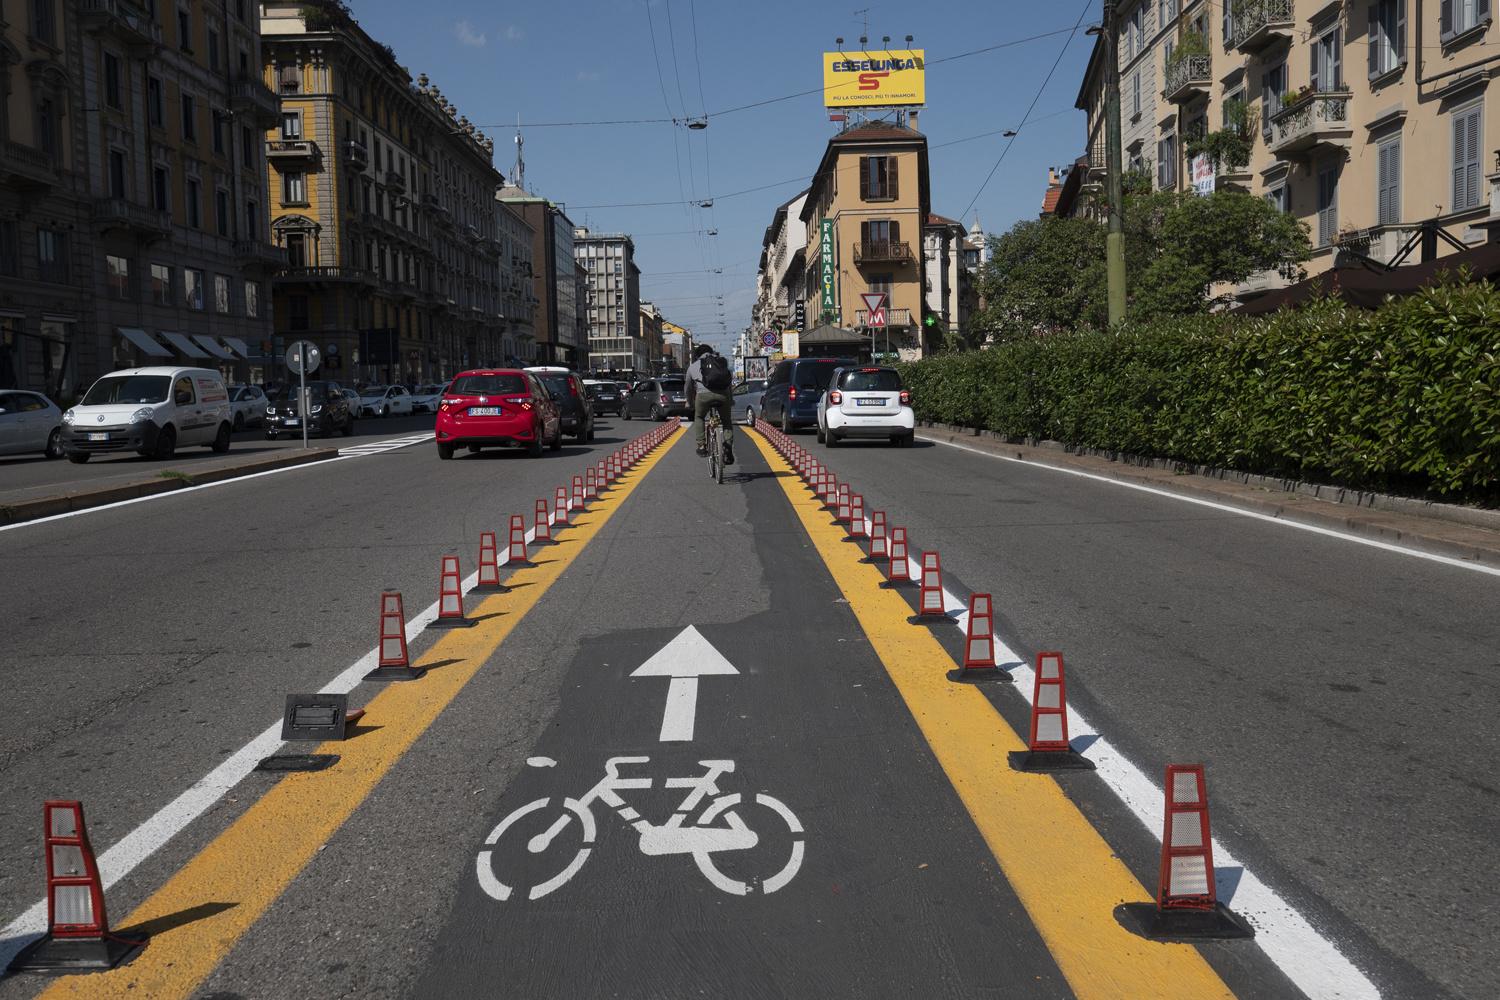 Le centre ville de Milan s'adapte à l'engouement et la nécessite du vélo